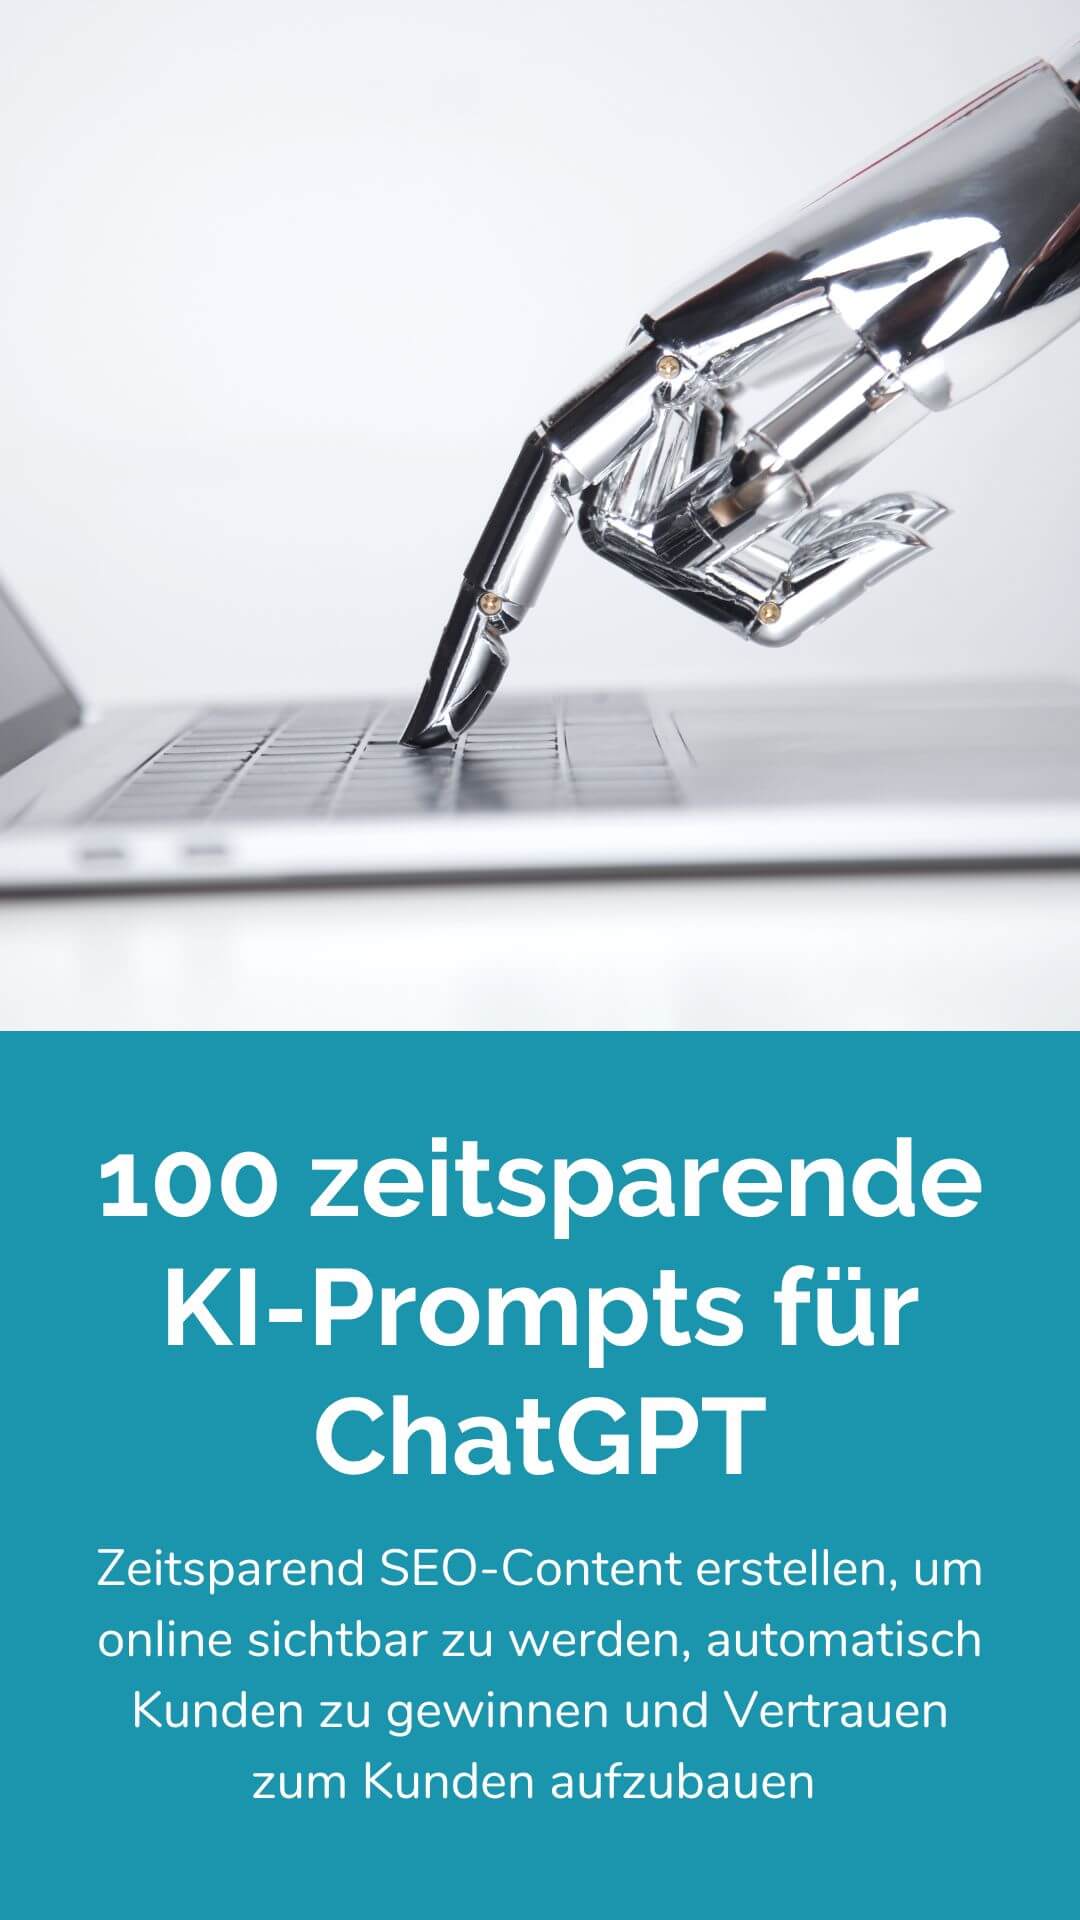 100 zeitsparende KI-Prompts für ChatGPT